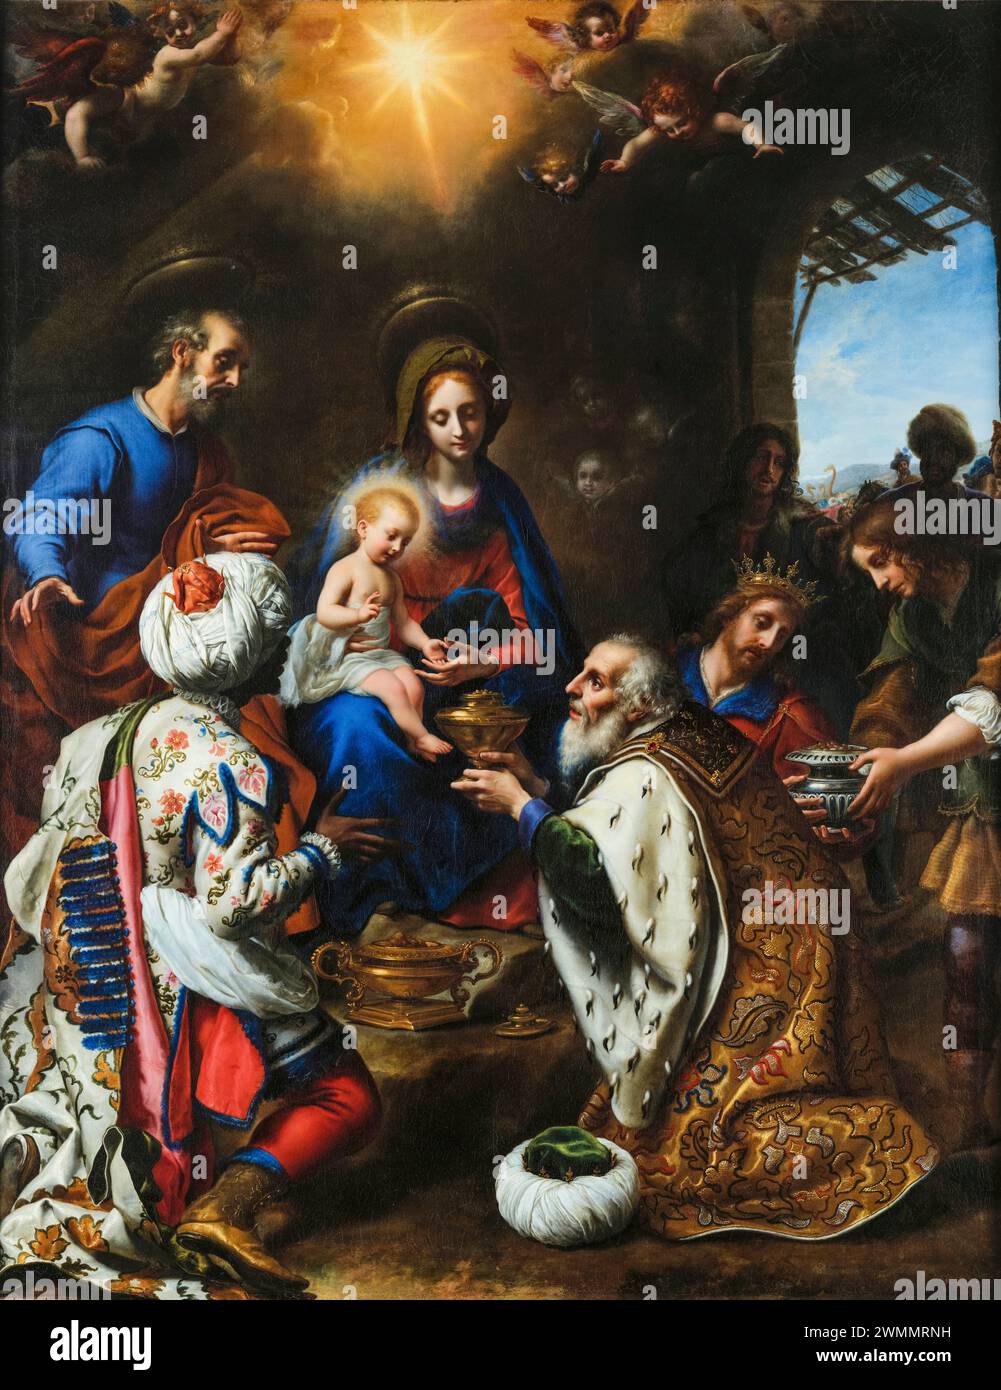 Carlo dolci, l'Adorazione dei Re, pittura ad olio su tela, 1649 Foto Stock